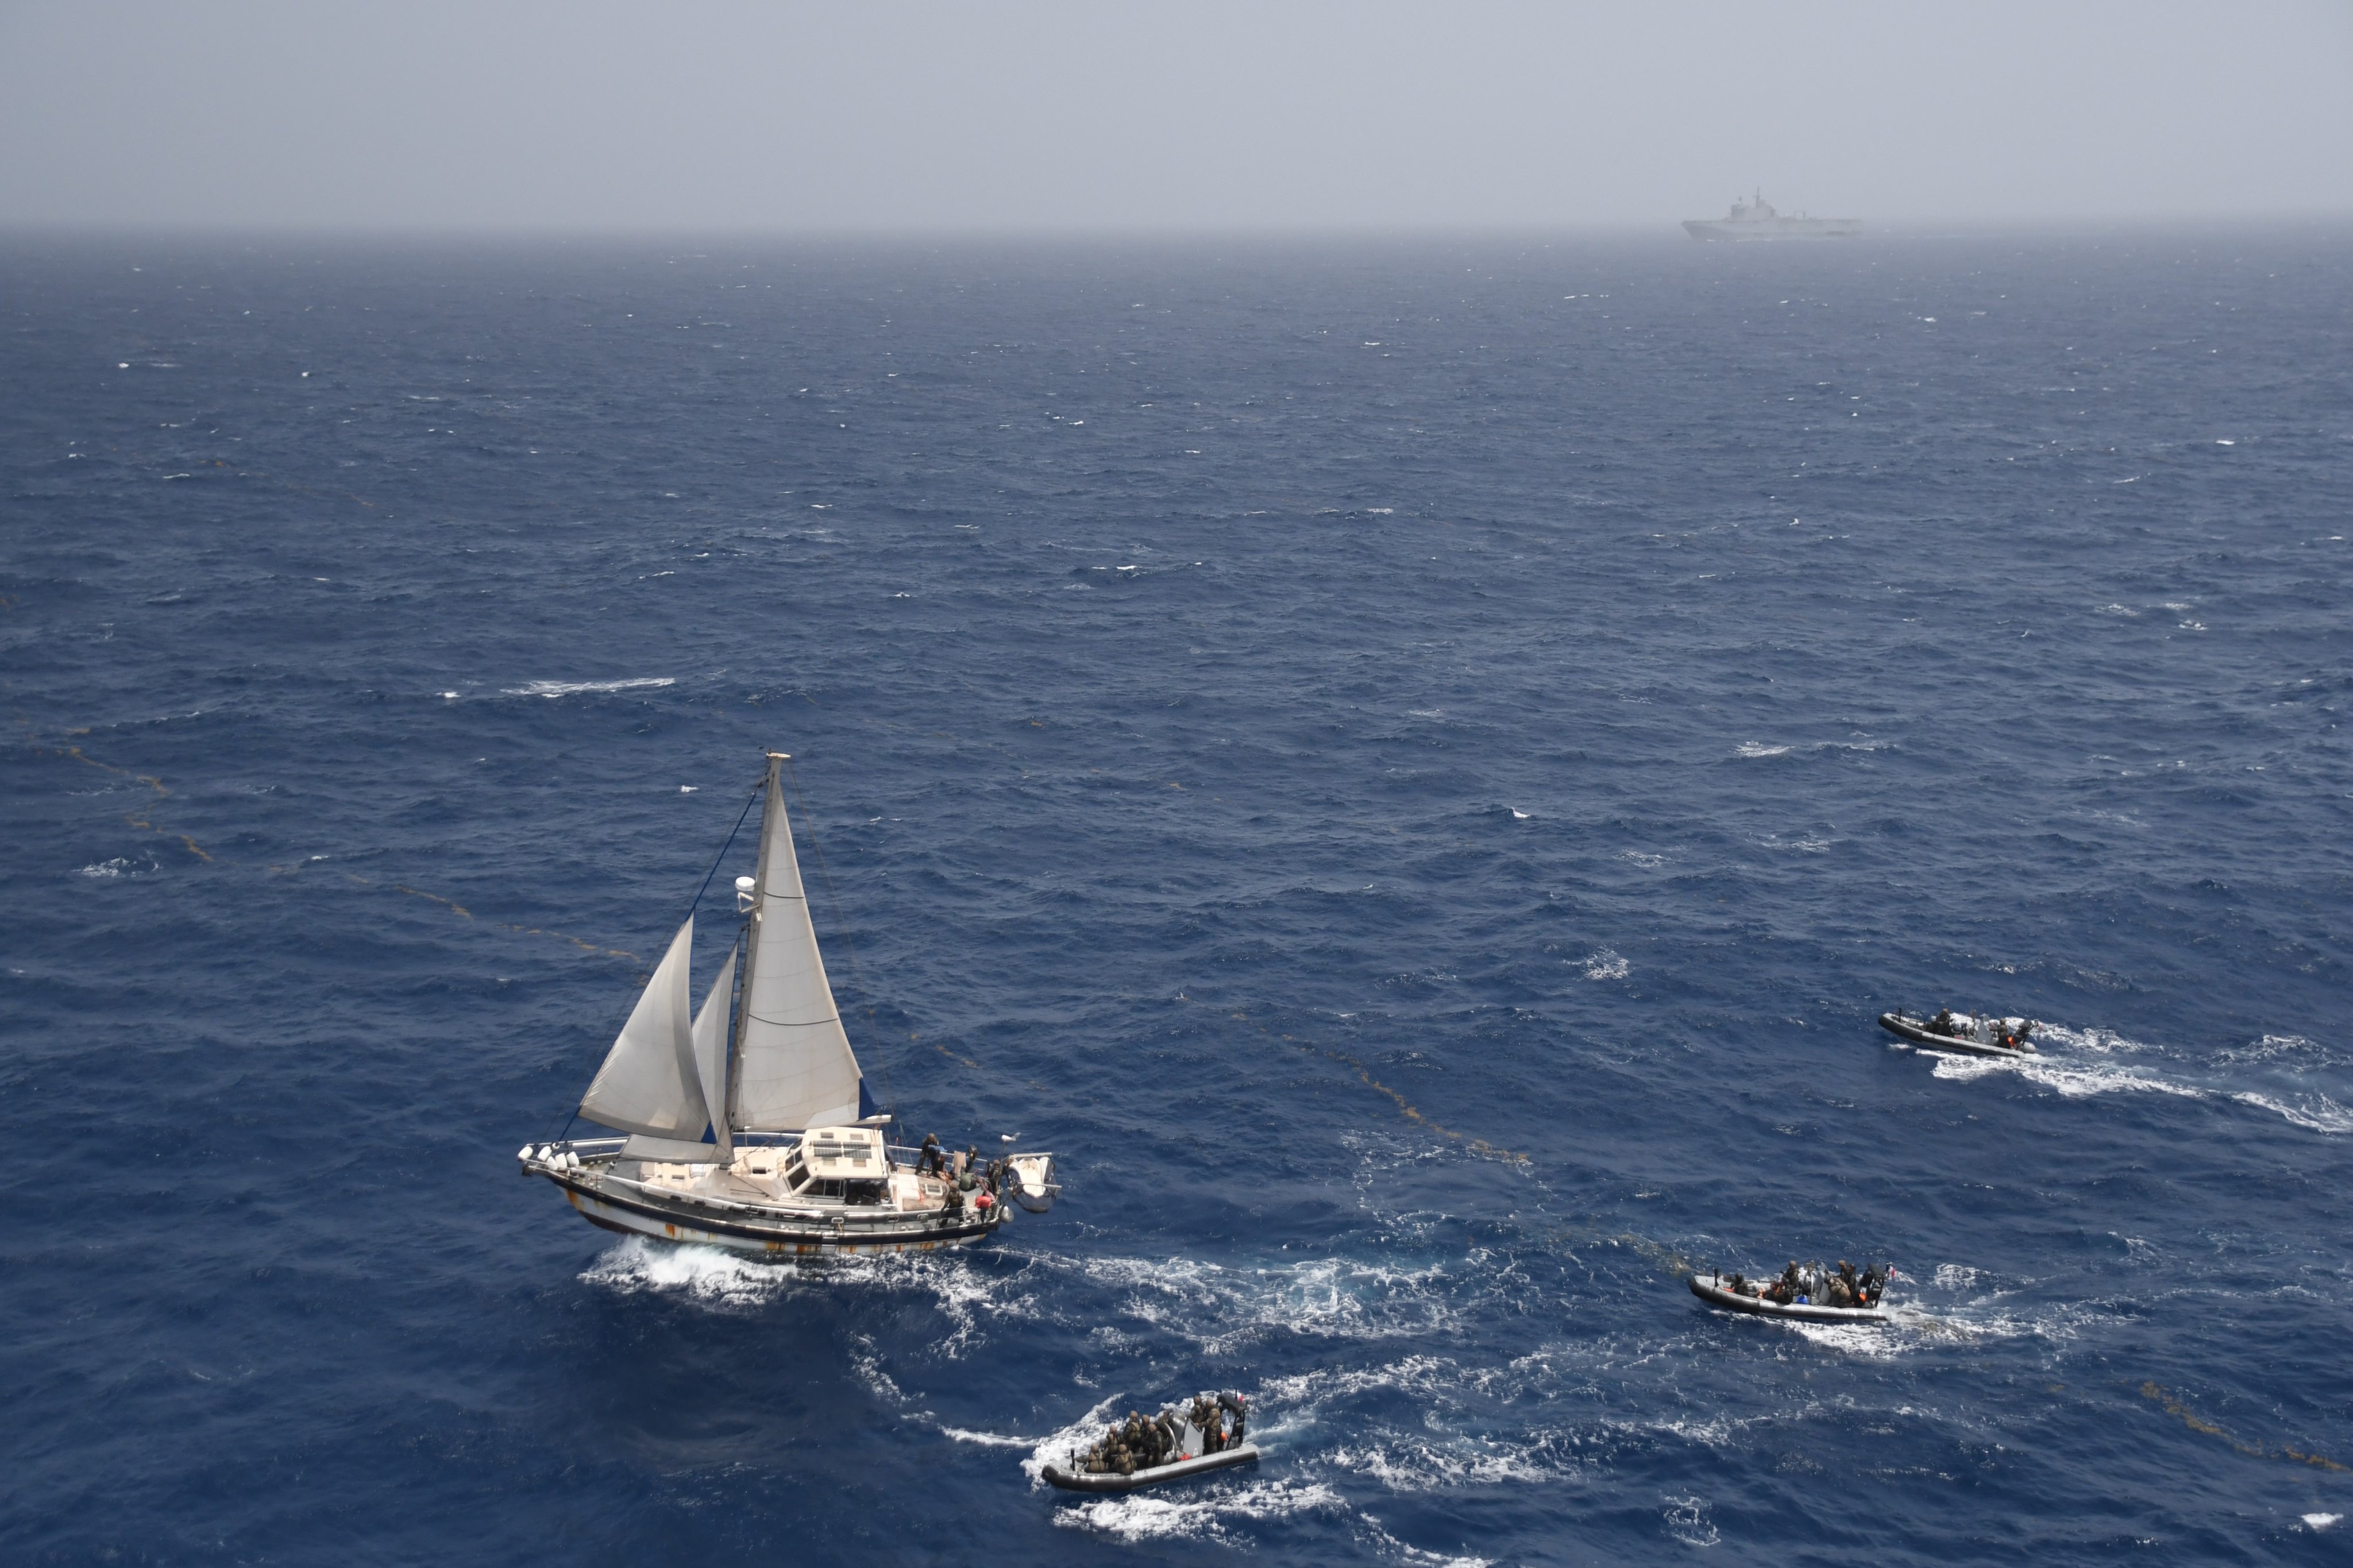 Saisie de drogue à bord d'un voilier dans le golfe de Guinée